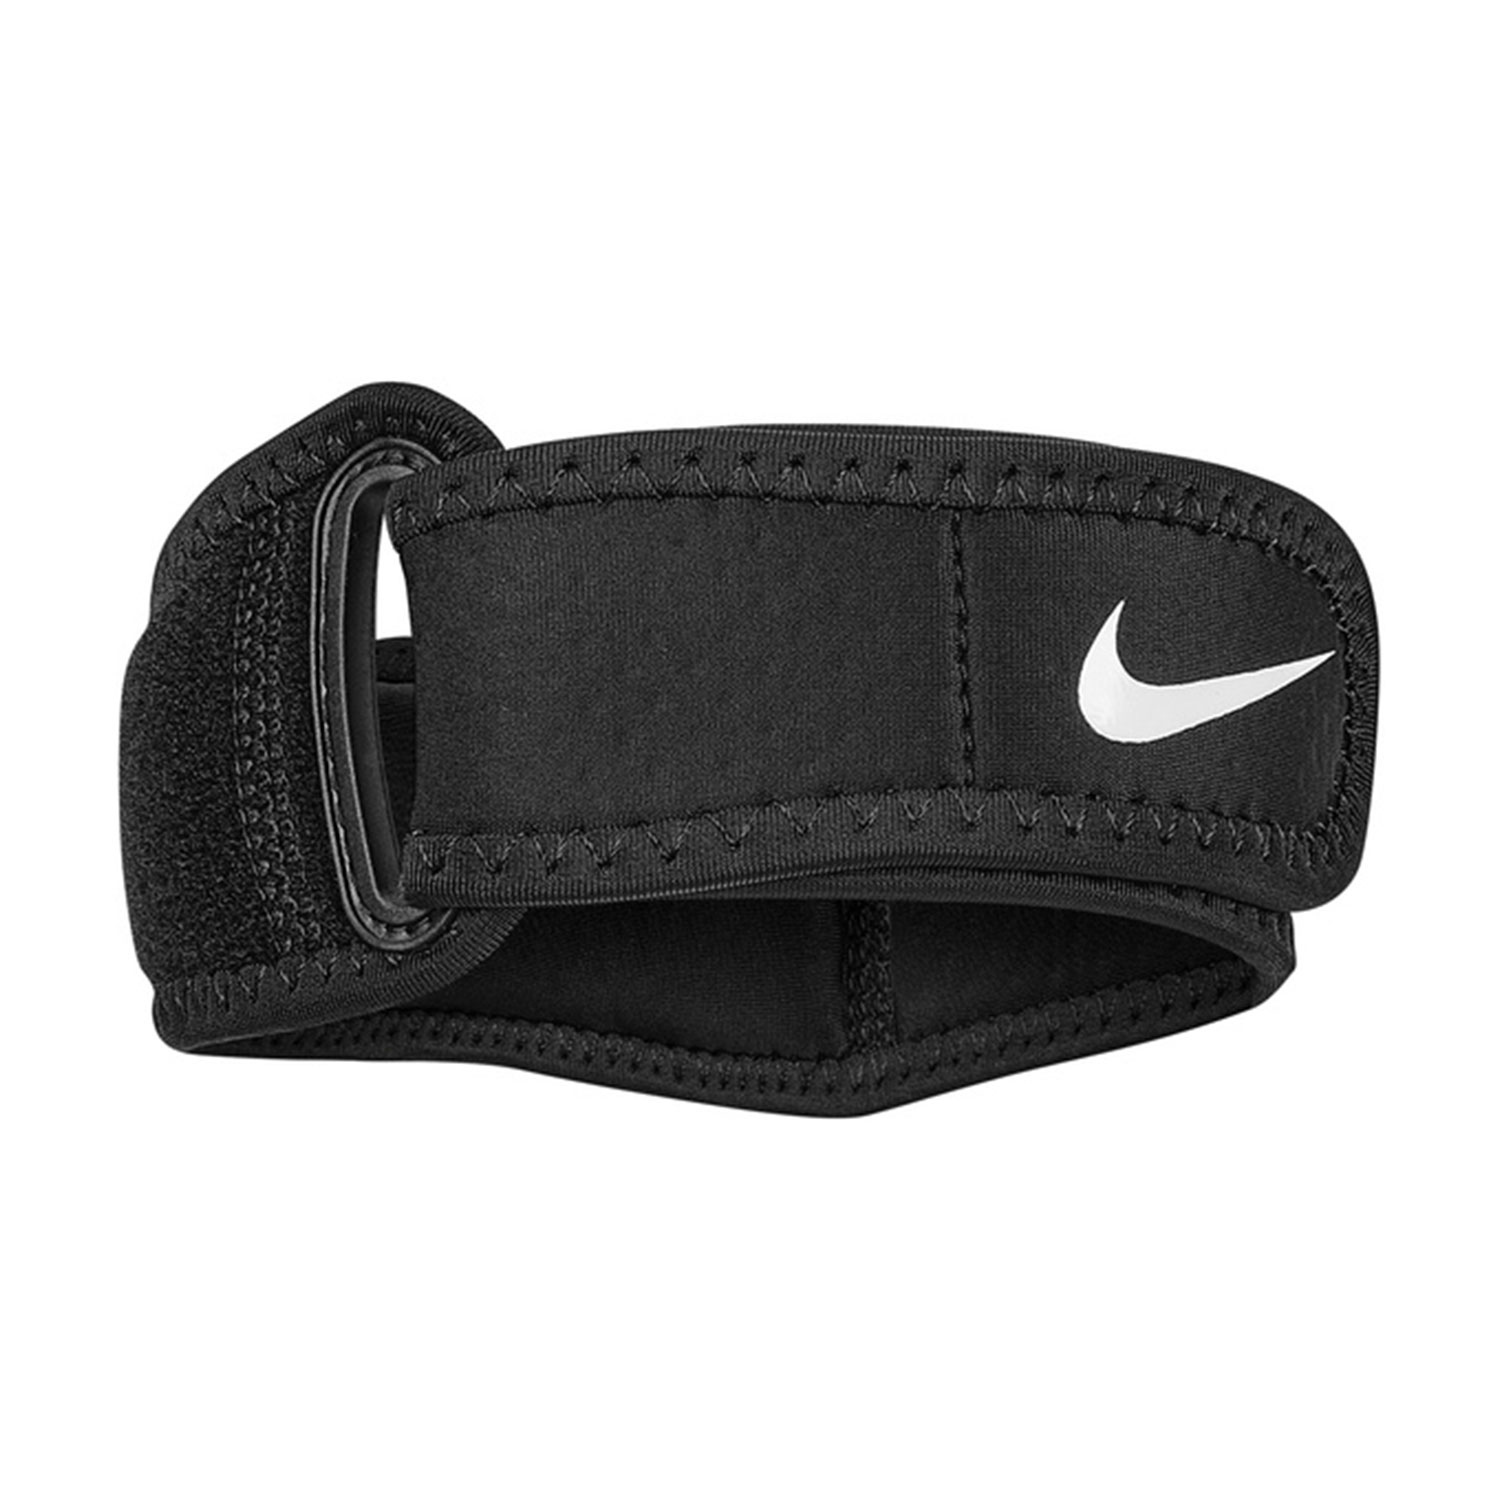 Nike Pro 3.0 Elbow Band - Black/White